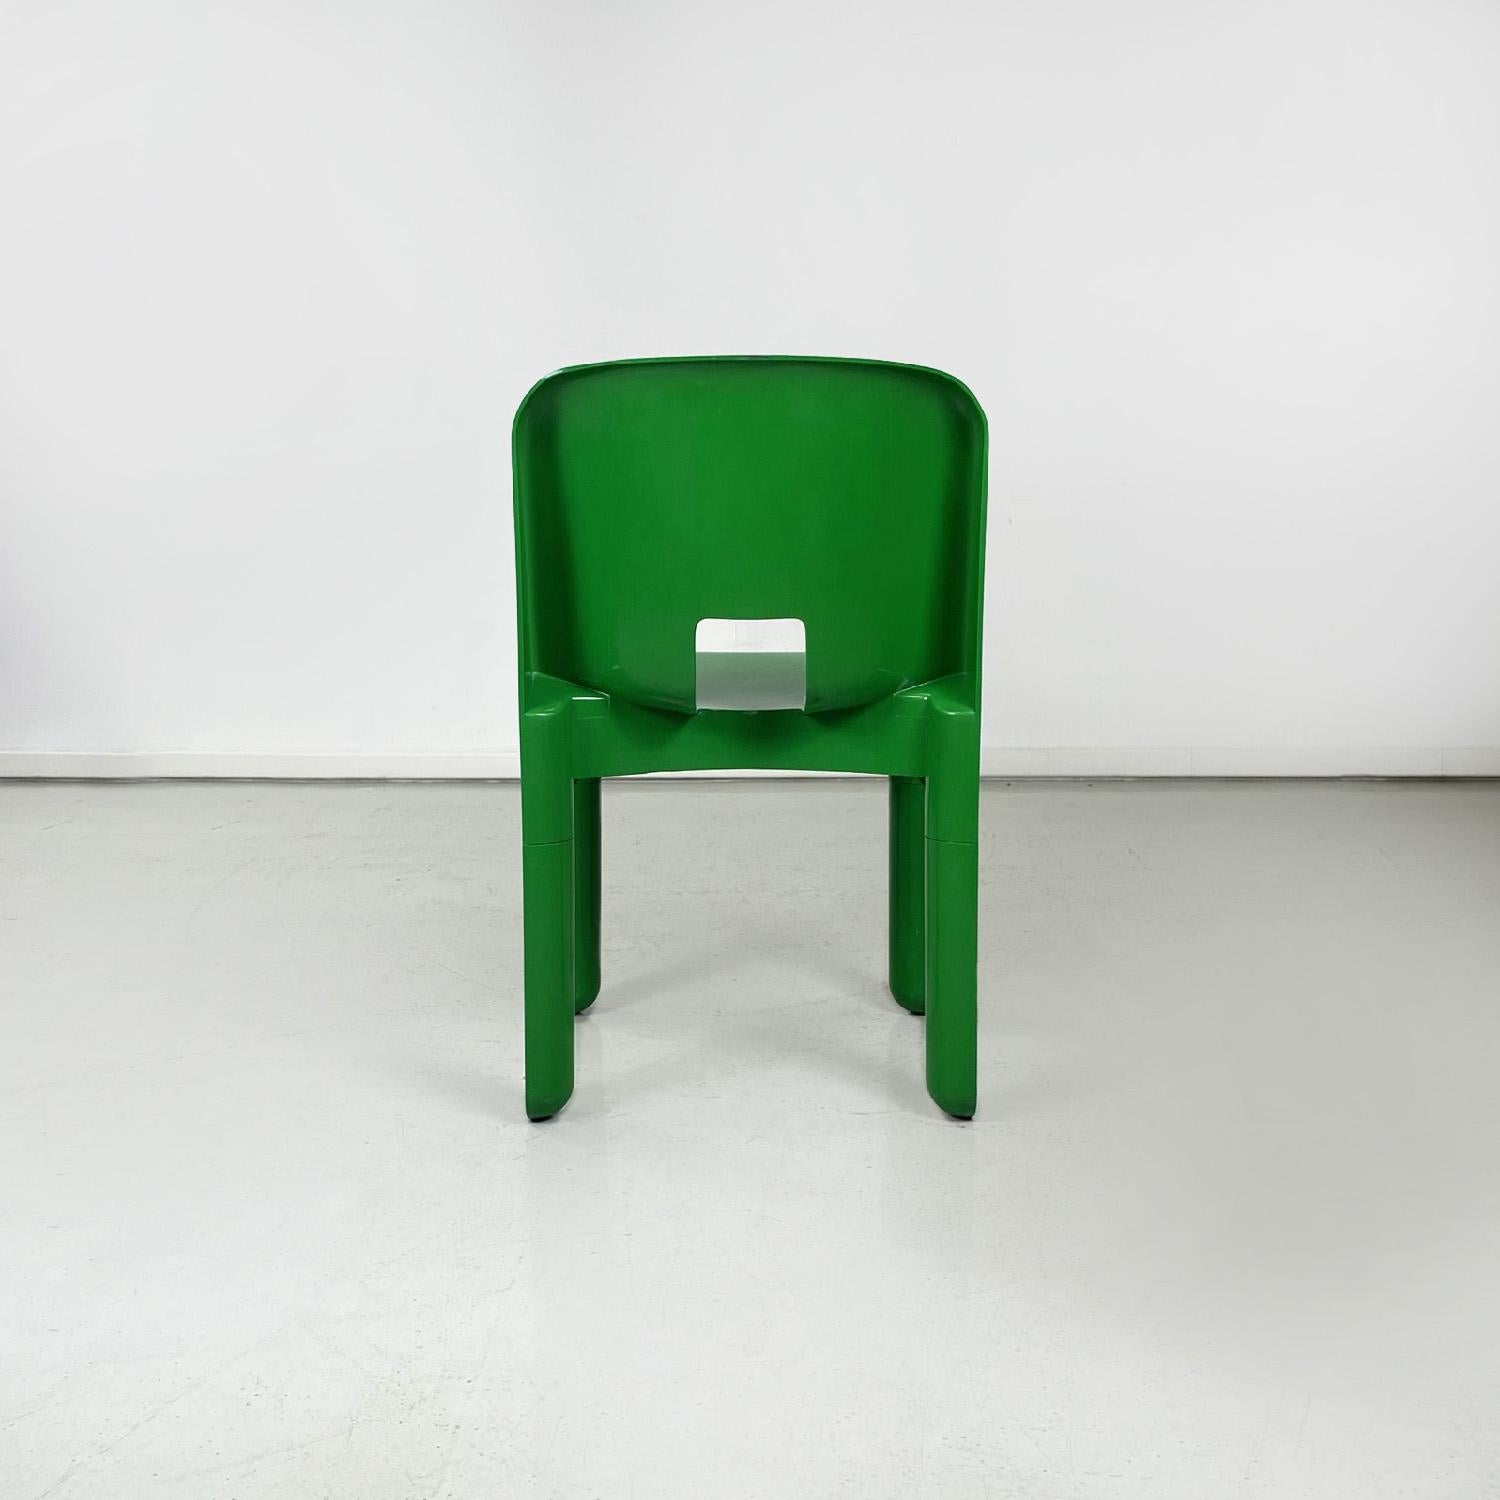 Moderne Chaises vertes modernes italiennes 4868 Universal Chair by Joe Colombo Kartell, 1970 en vente